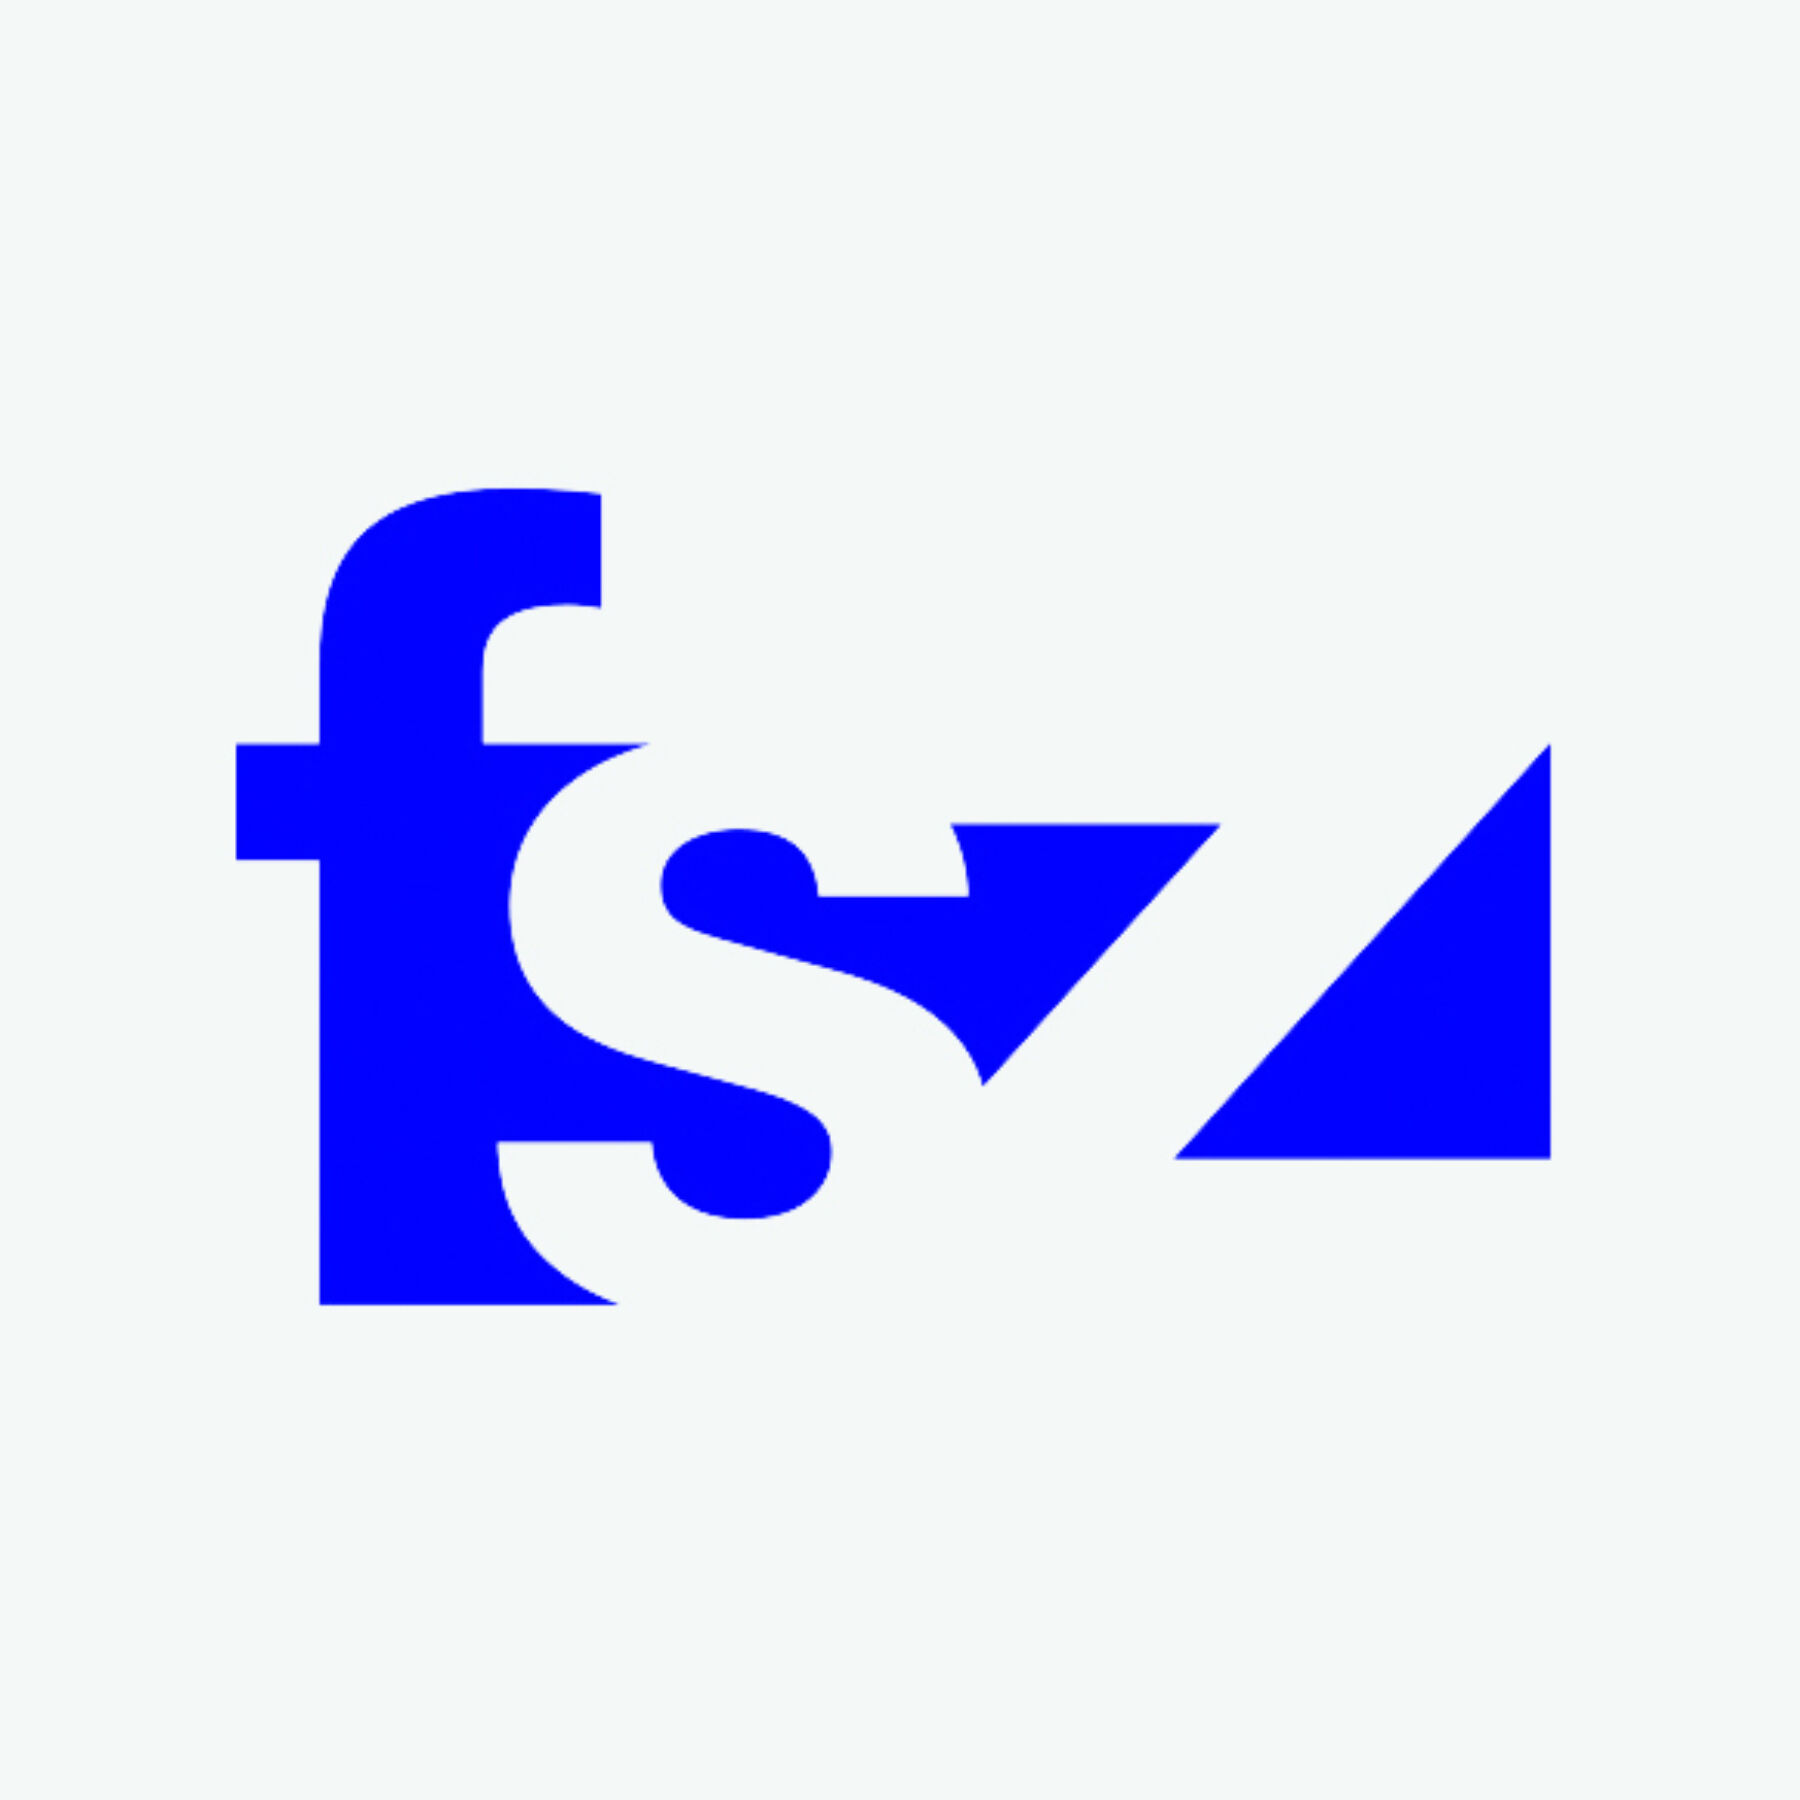 FSZ Logo blau hoch bg grau